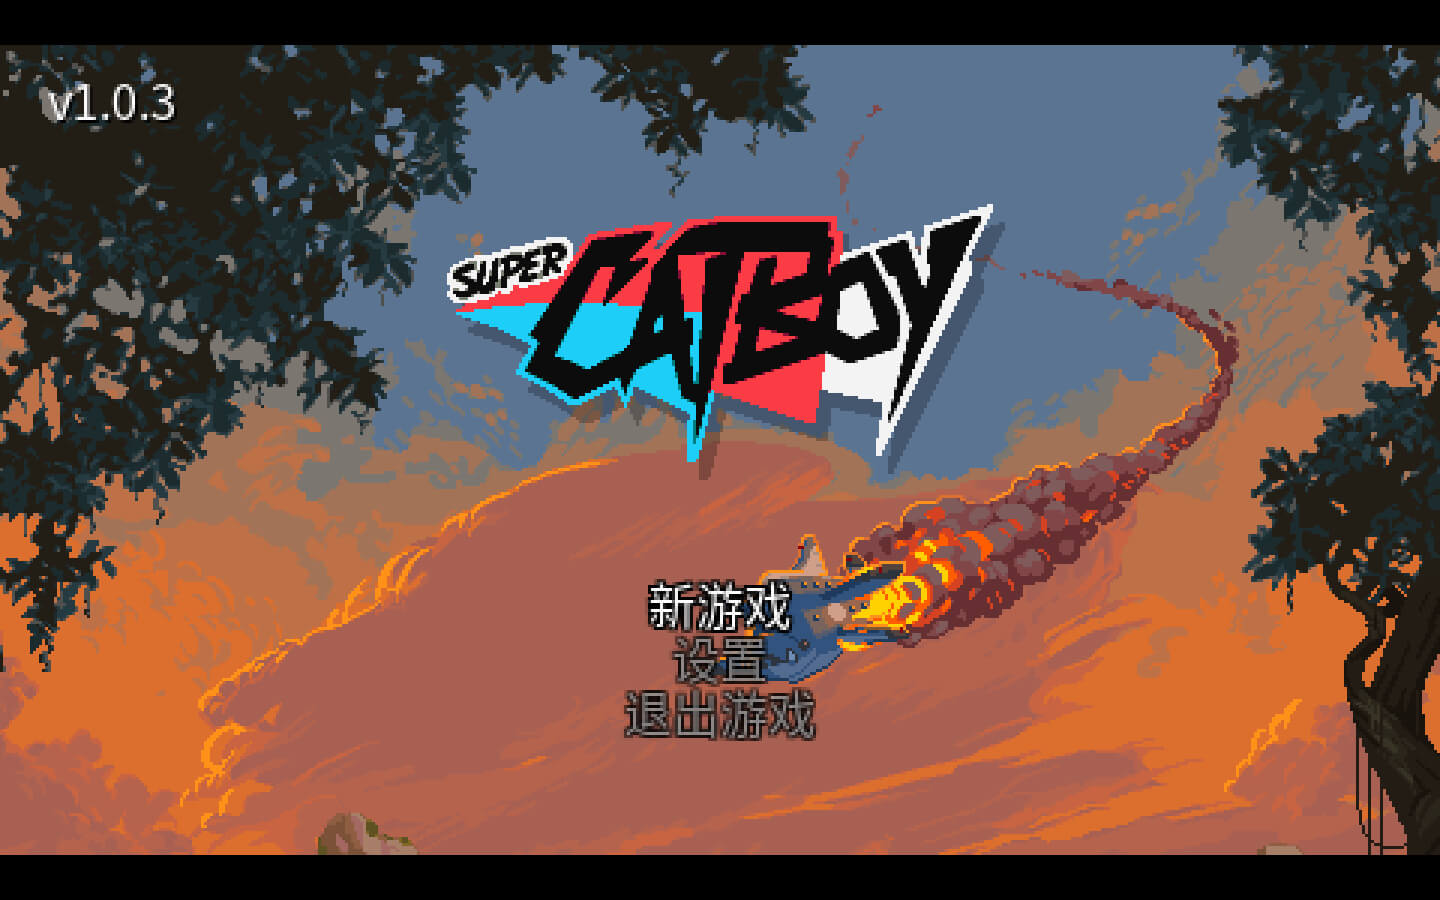 超级猫猫哥 Super Catboy for Mac v1.0.4a 中文原生版-1